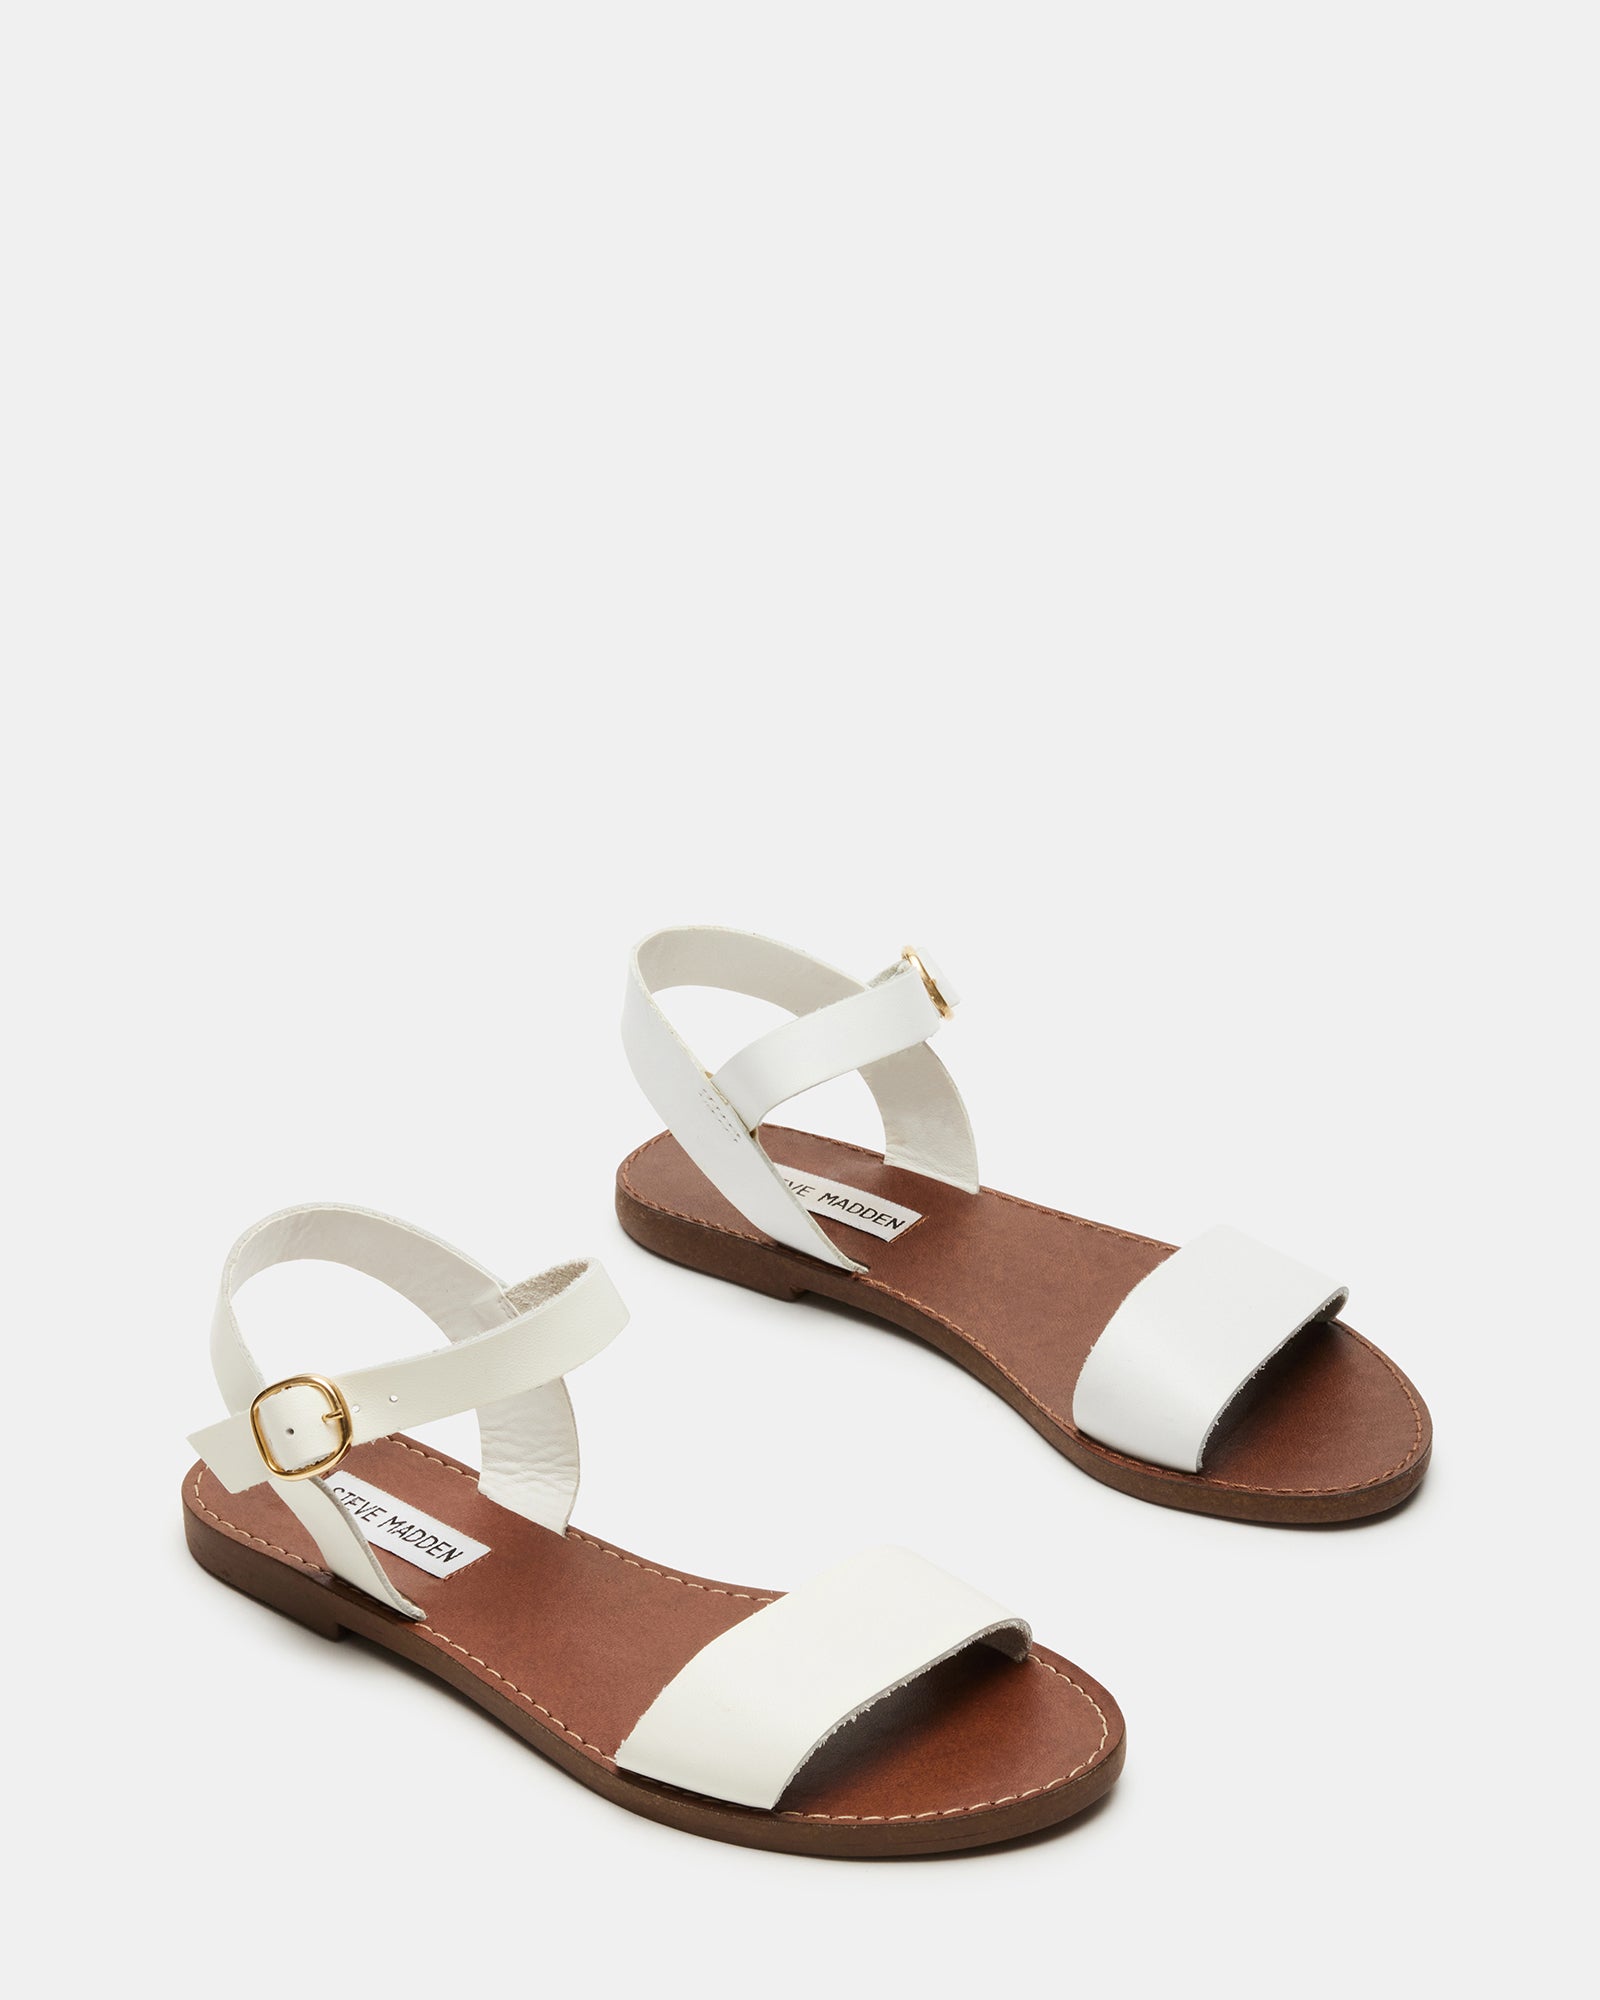 DONDDI White Leather Sandal | Women's Sandals – Steve Madden